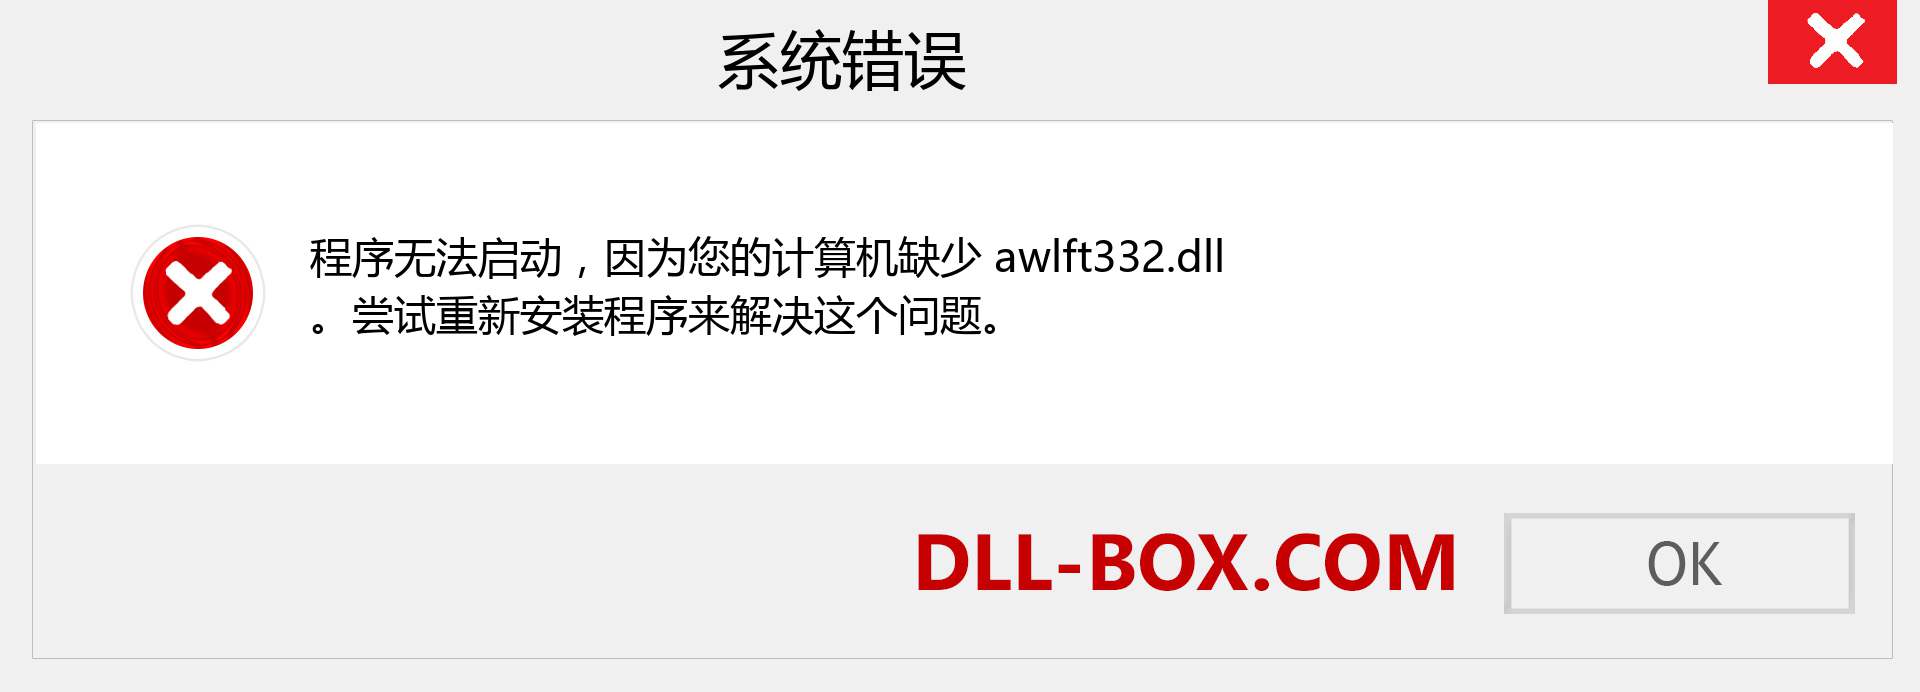 awlft332.dll 文件丢失？。 适用于 Windows 7、8、10 的下载 - 修复 Windows、照片、图像上的 awlft332 dll 丢失错误